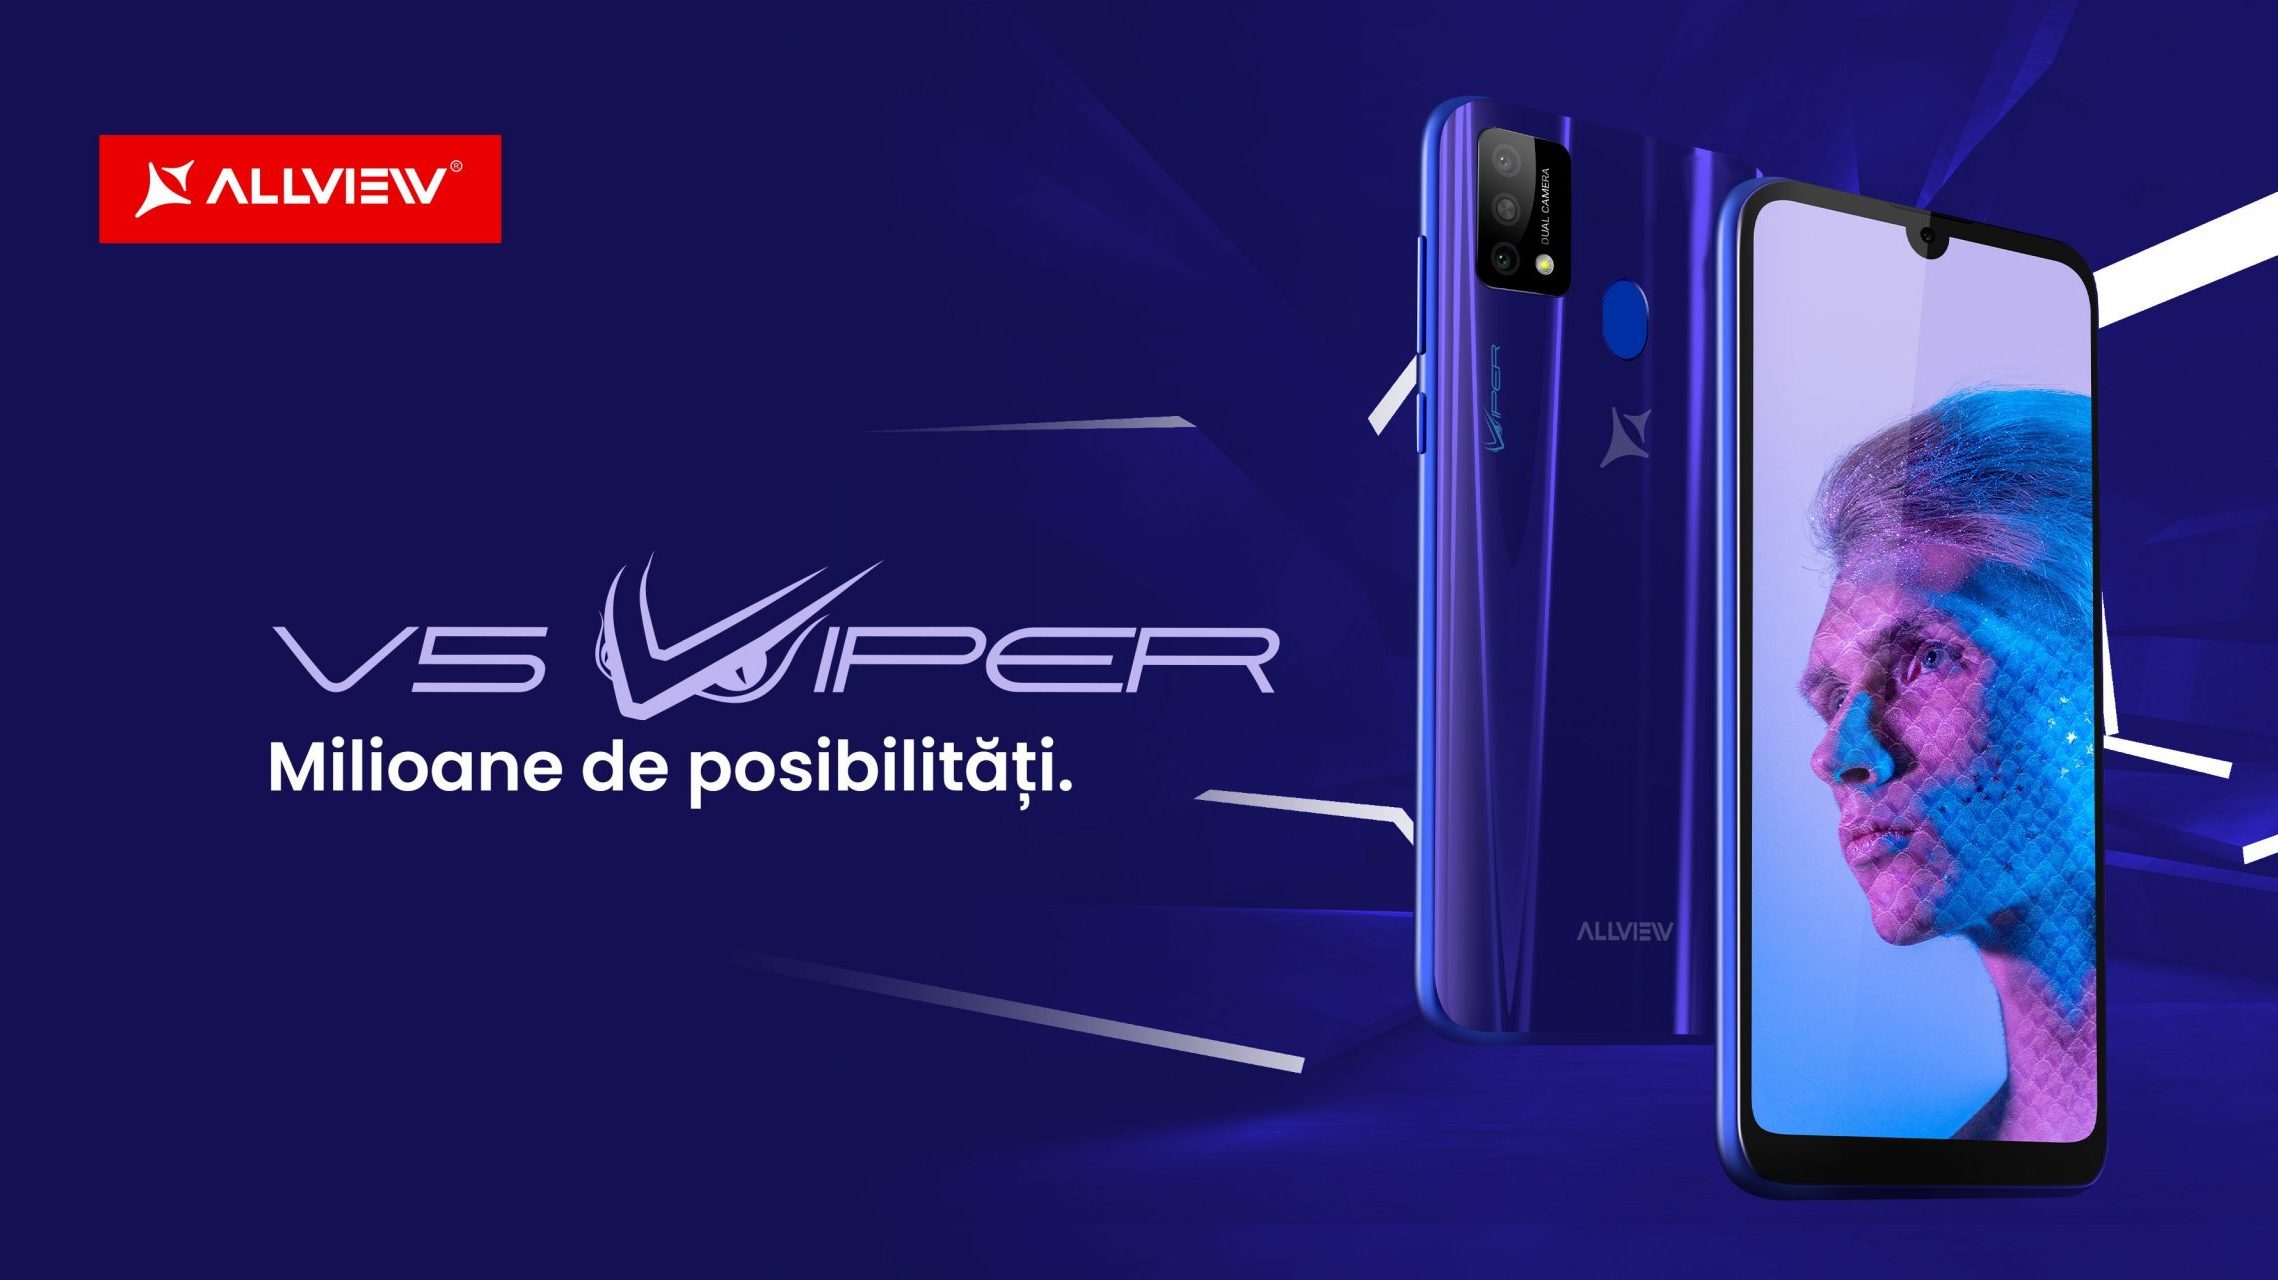 Allview lansează cel mai nou model Viper